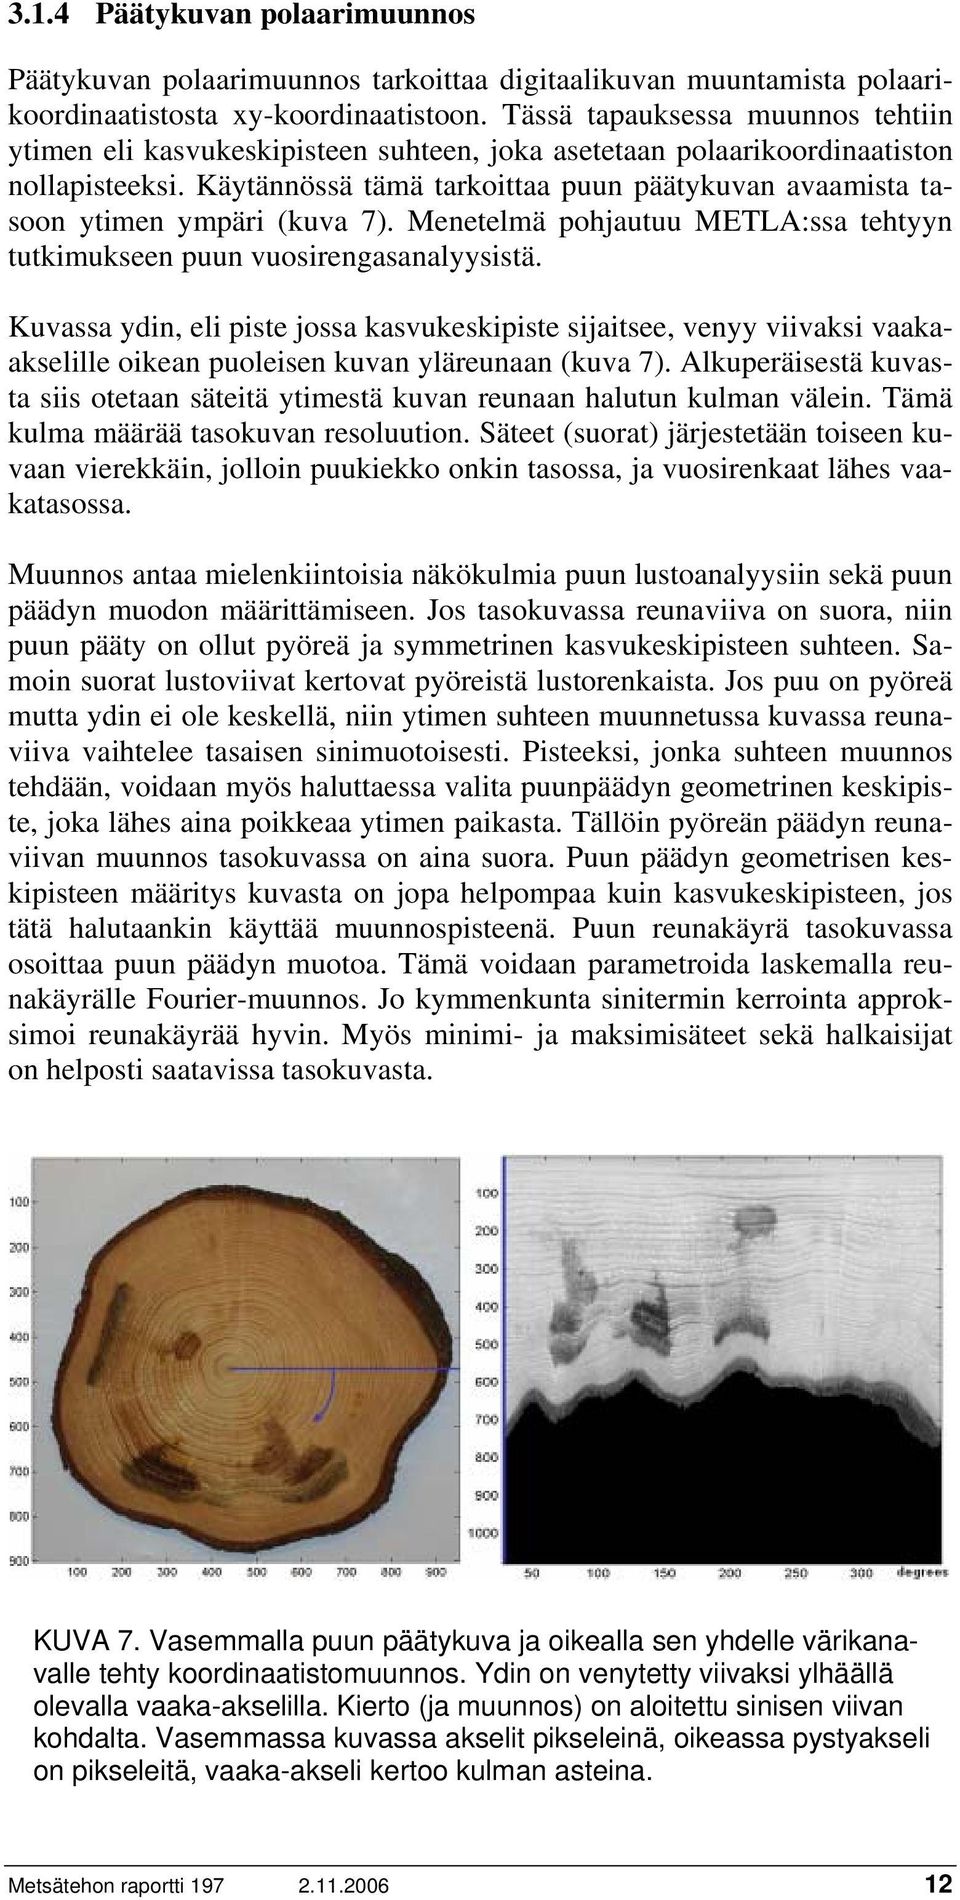 Käytännössä tämä tarkoittaa puun päätykuvan avaamista tasoon ytimen ympäri (kuva 7). Menetelmä pohjautuu METLA:ssa tehtyyn tutkimukseen puun vuosirengasanalyysistä.